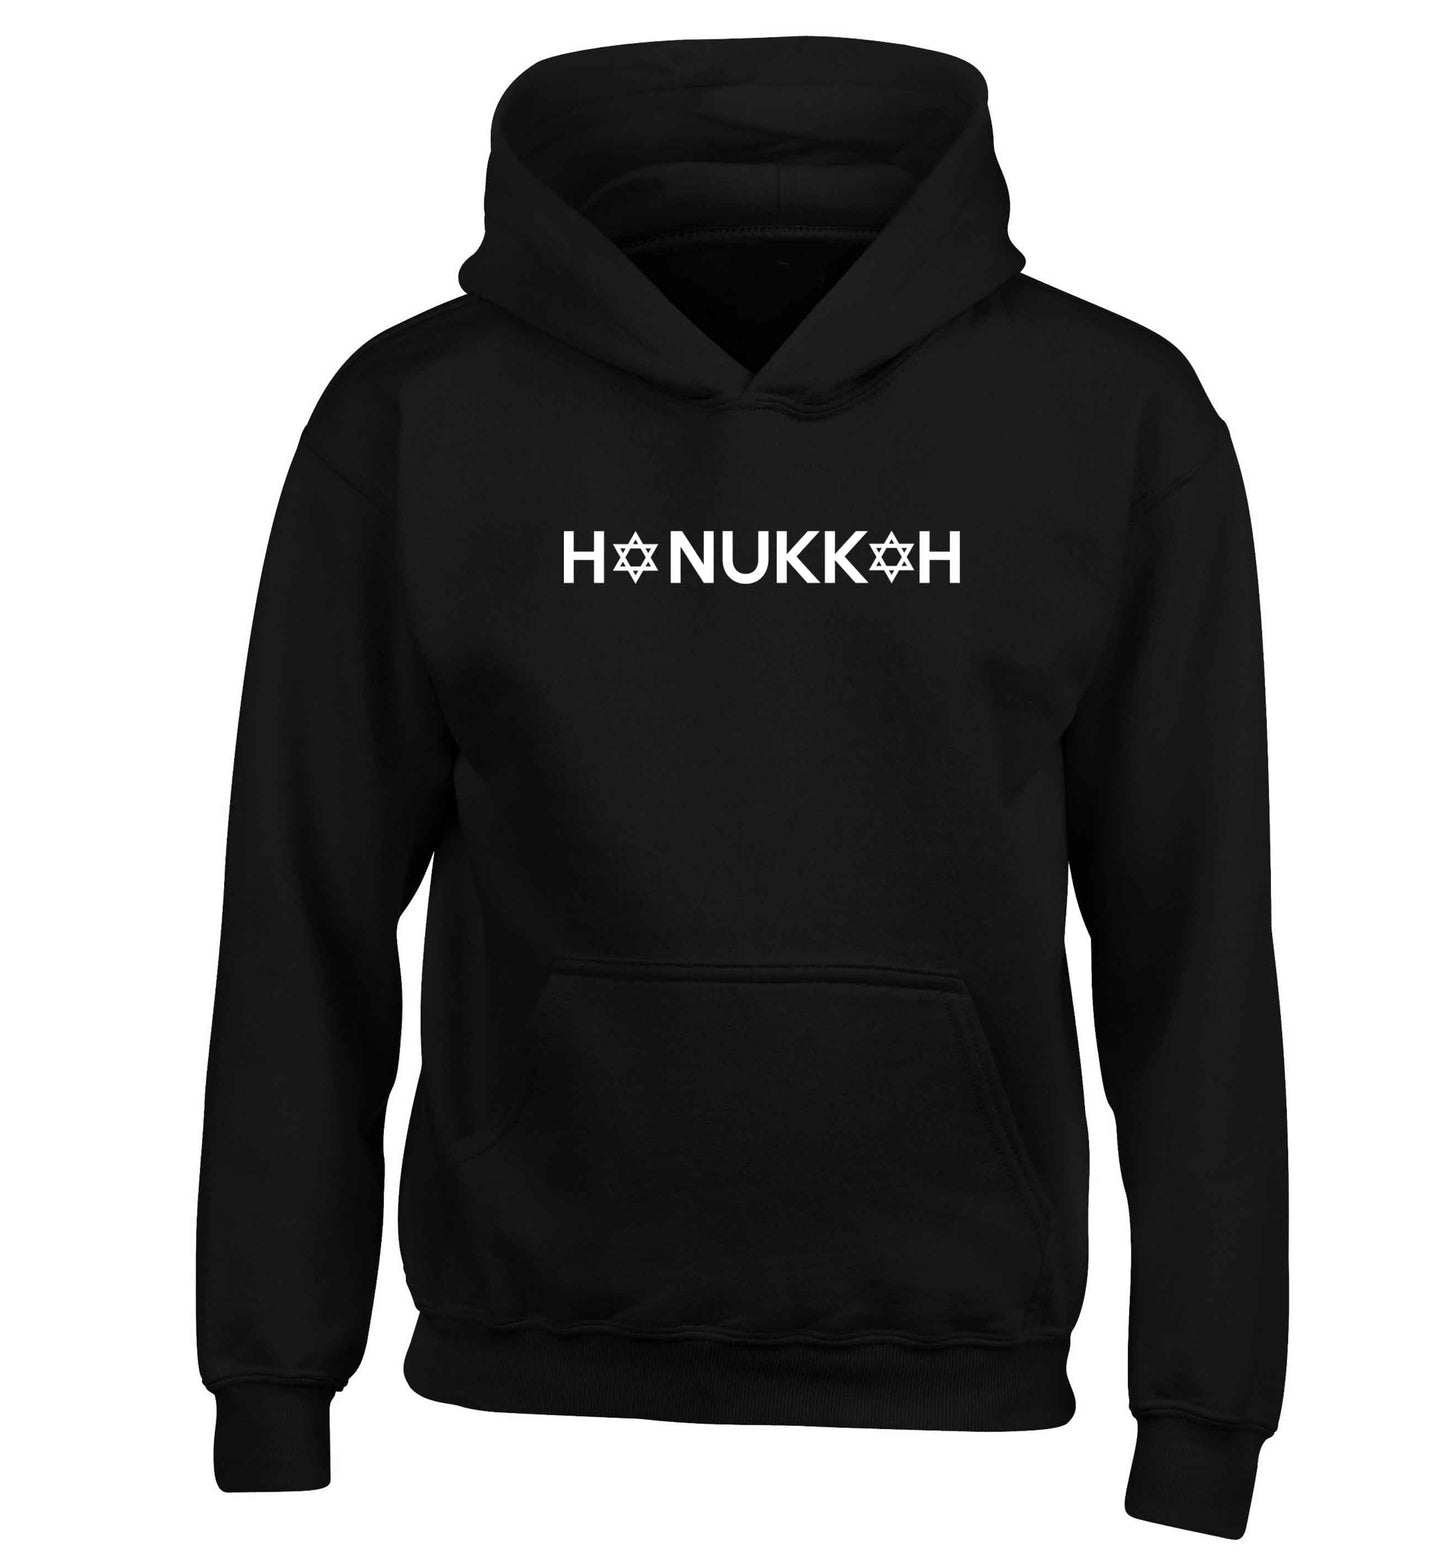 Hanukkah star of david children's black hoodie 12-13 Years